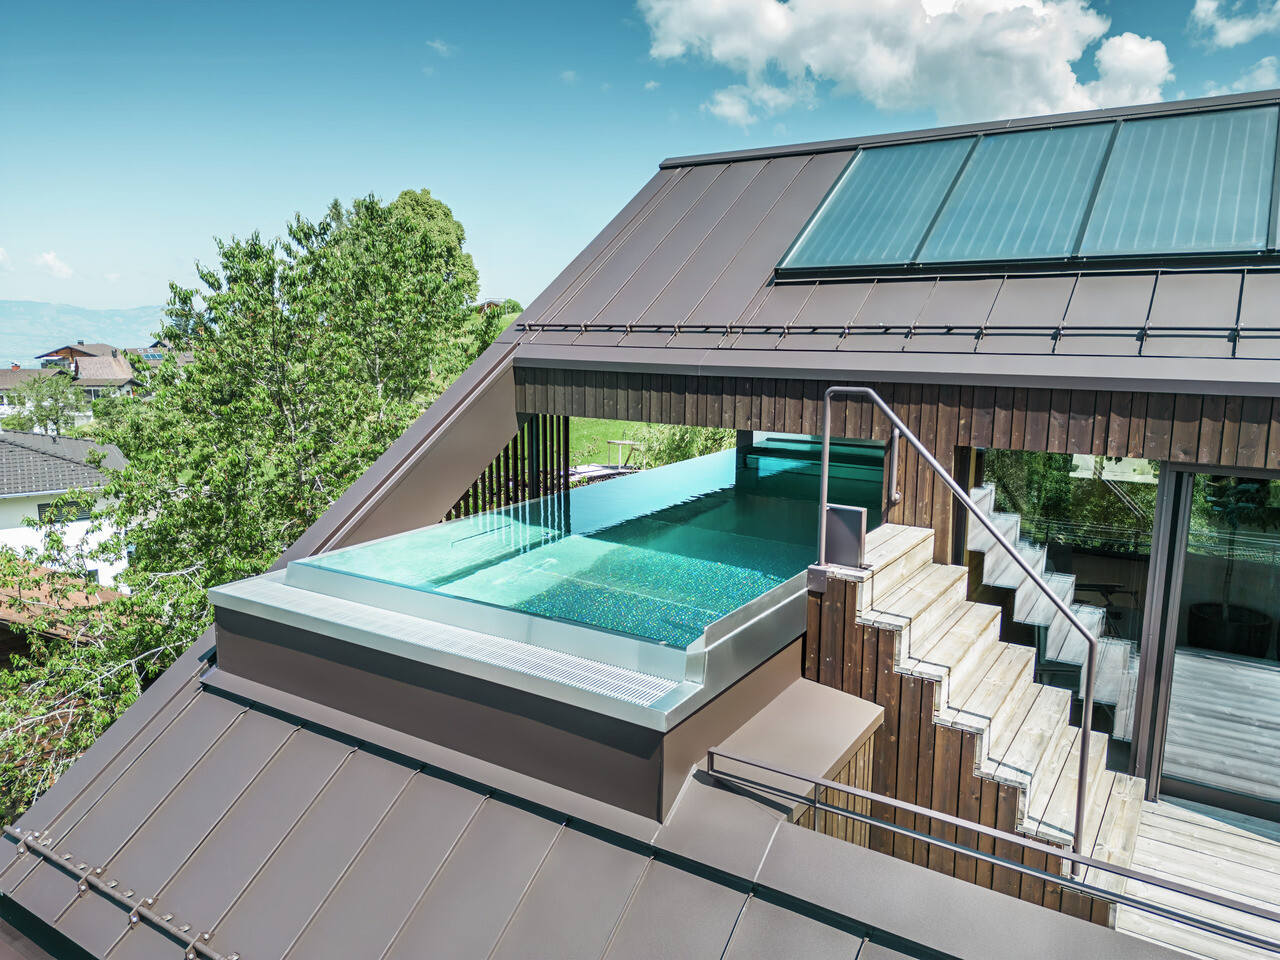 Luftaufnahme eines modernen Hauses mit einem nussbraunen PREFA Prefalz Dach. Eine Dachterrasse mit Pool bietet einen exklusiven Entspannungsbereich mit Blick auf die hügelige, grüne Landschaft.